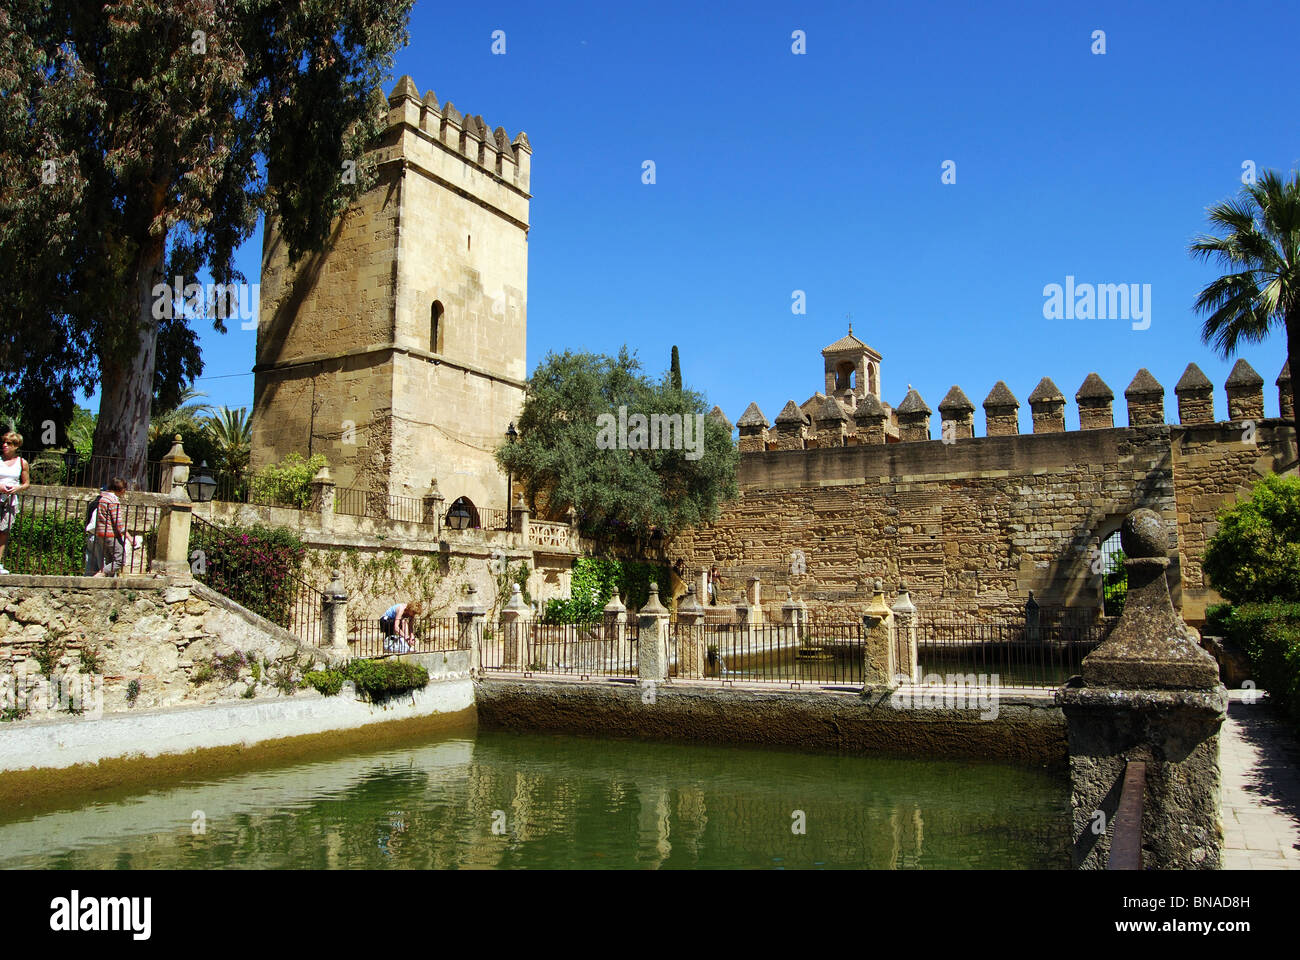 Palace Forteresse des Rois Chrétiens - tour du château avec piscine à l'avant-plan, Córdoba, Cordoue, Andalousie, province de l'Espagne. Banque D'Images